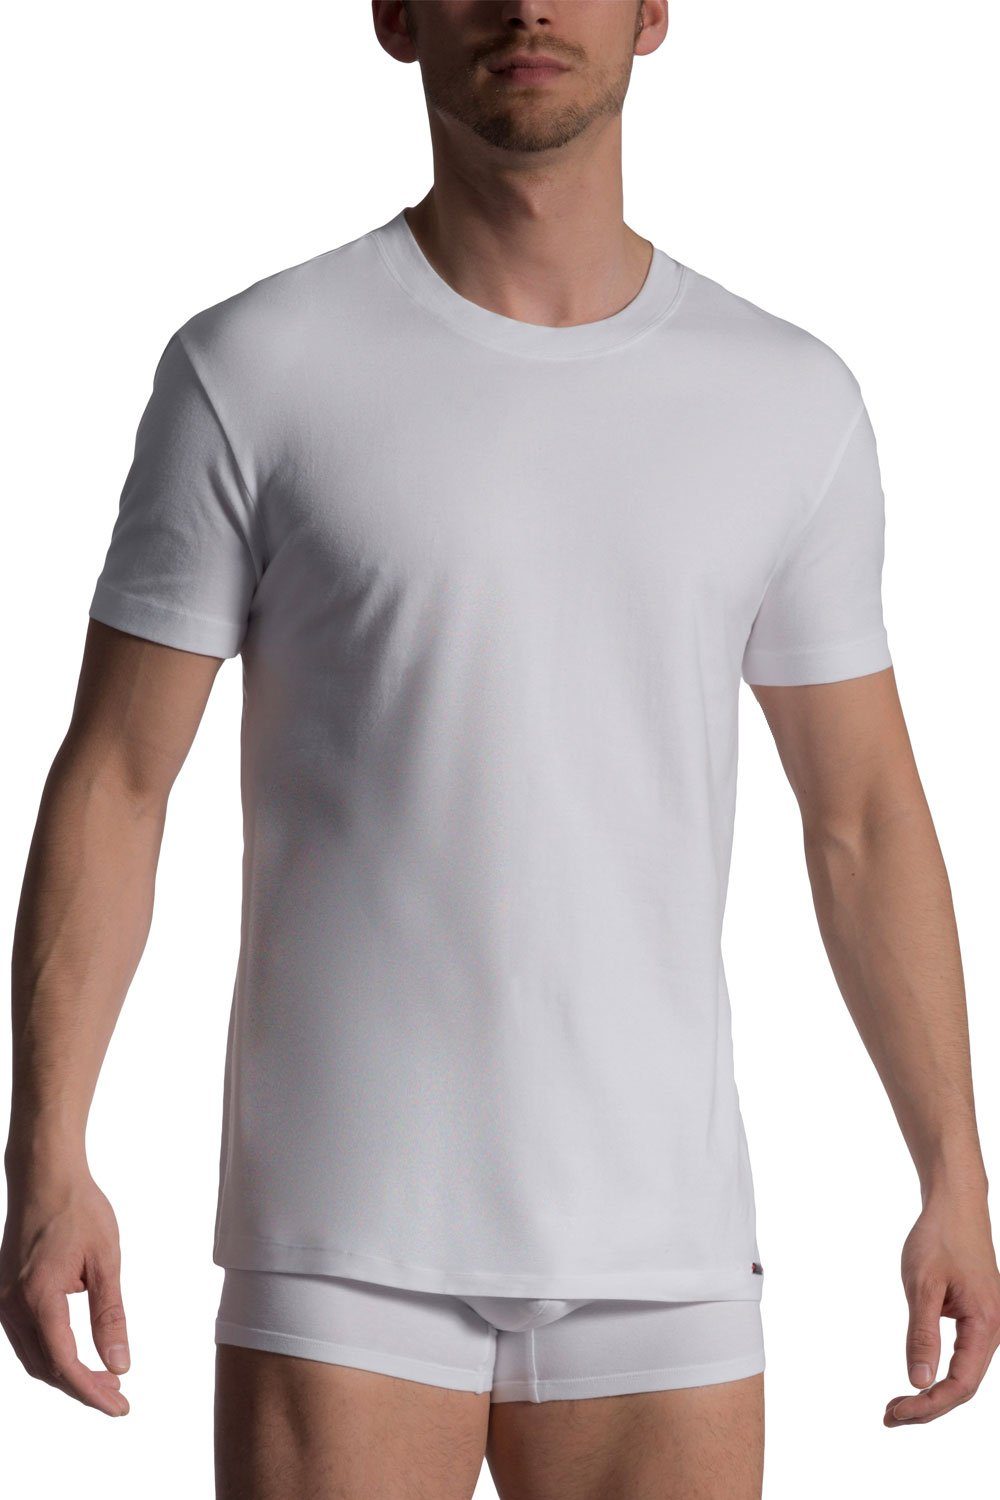 Olaf Benz T-Shirt T-Shirt, 2er-Pack 101028 (2er-Pack)